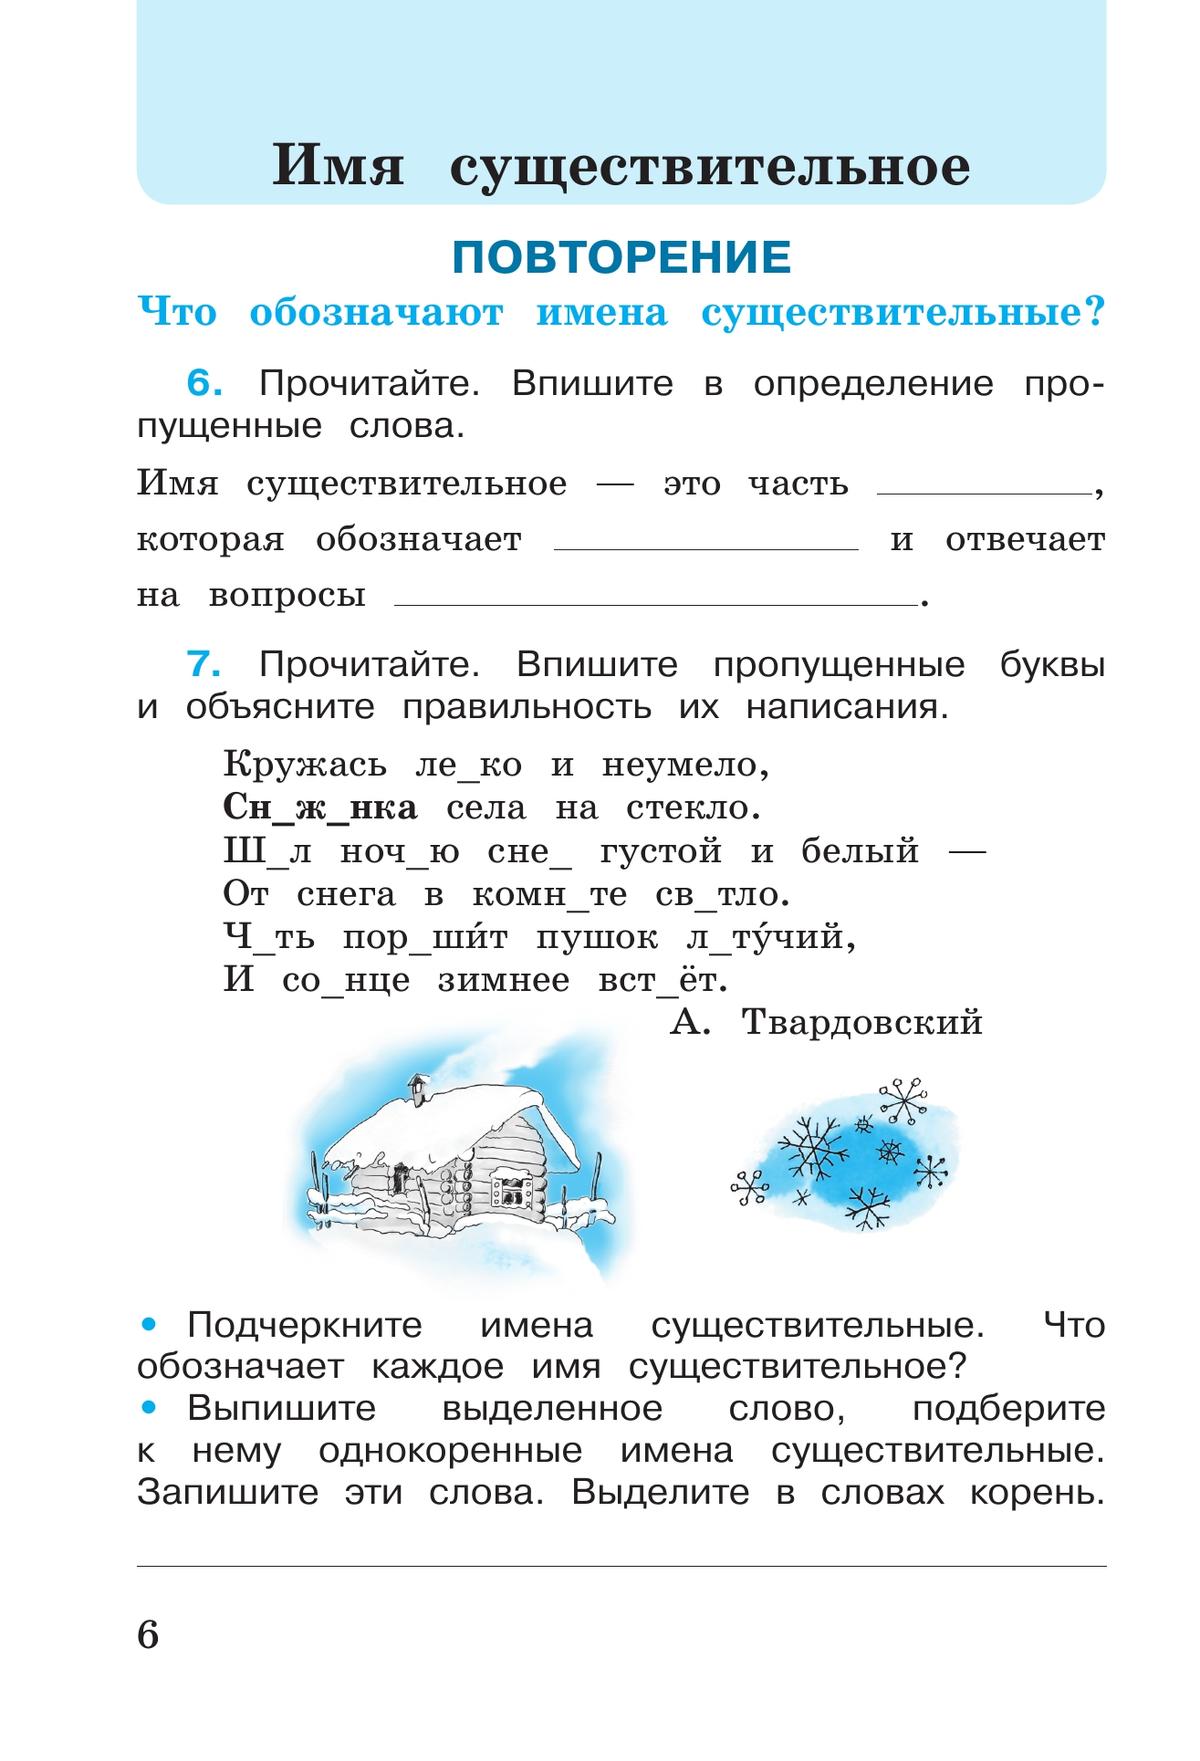 Русский язык. Рабочая тетрадь. 3 класс. В 2-х ч. Ч. 2 7